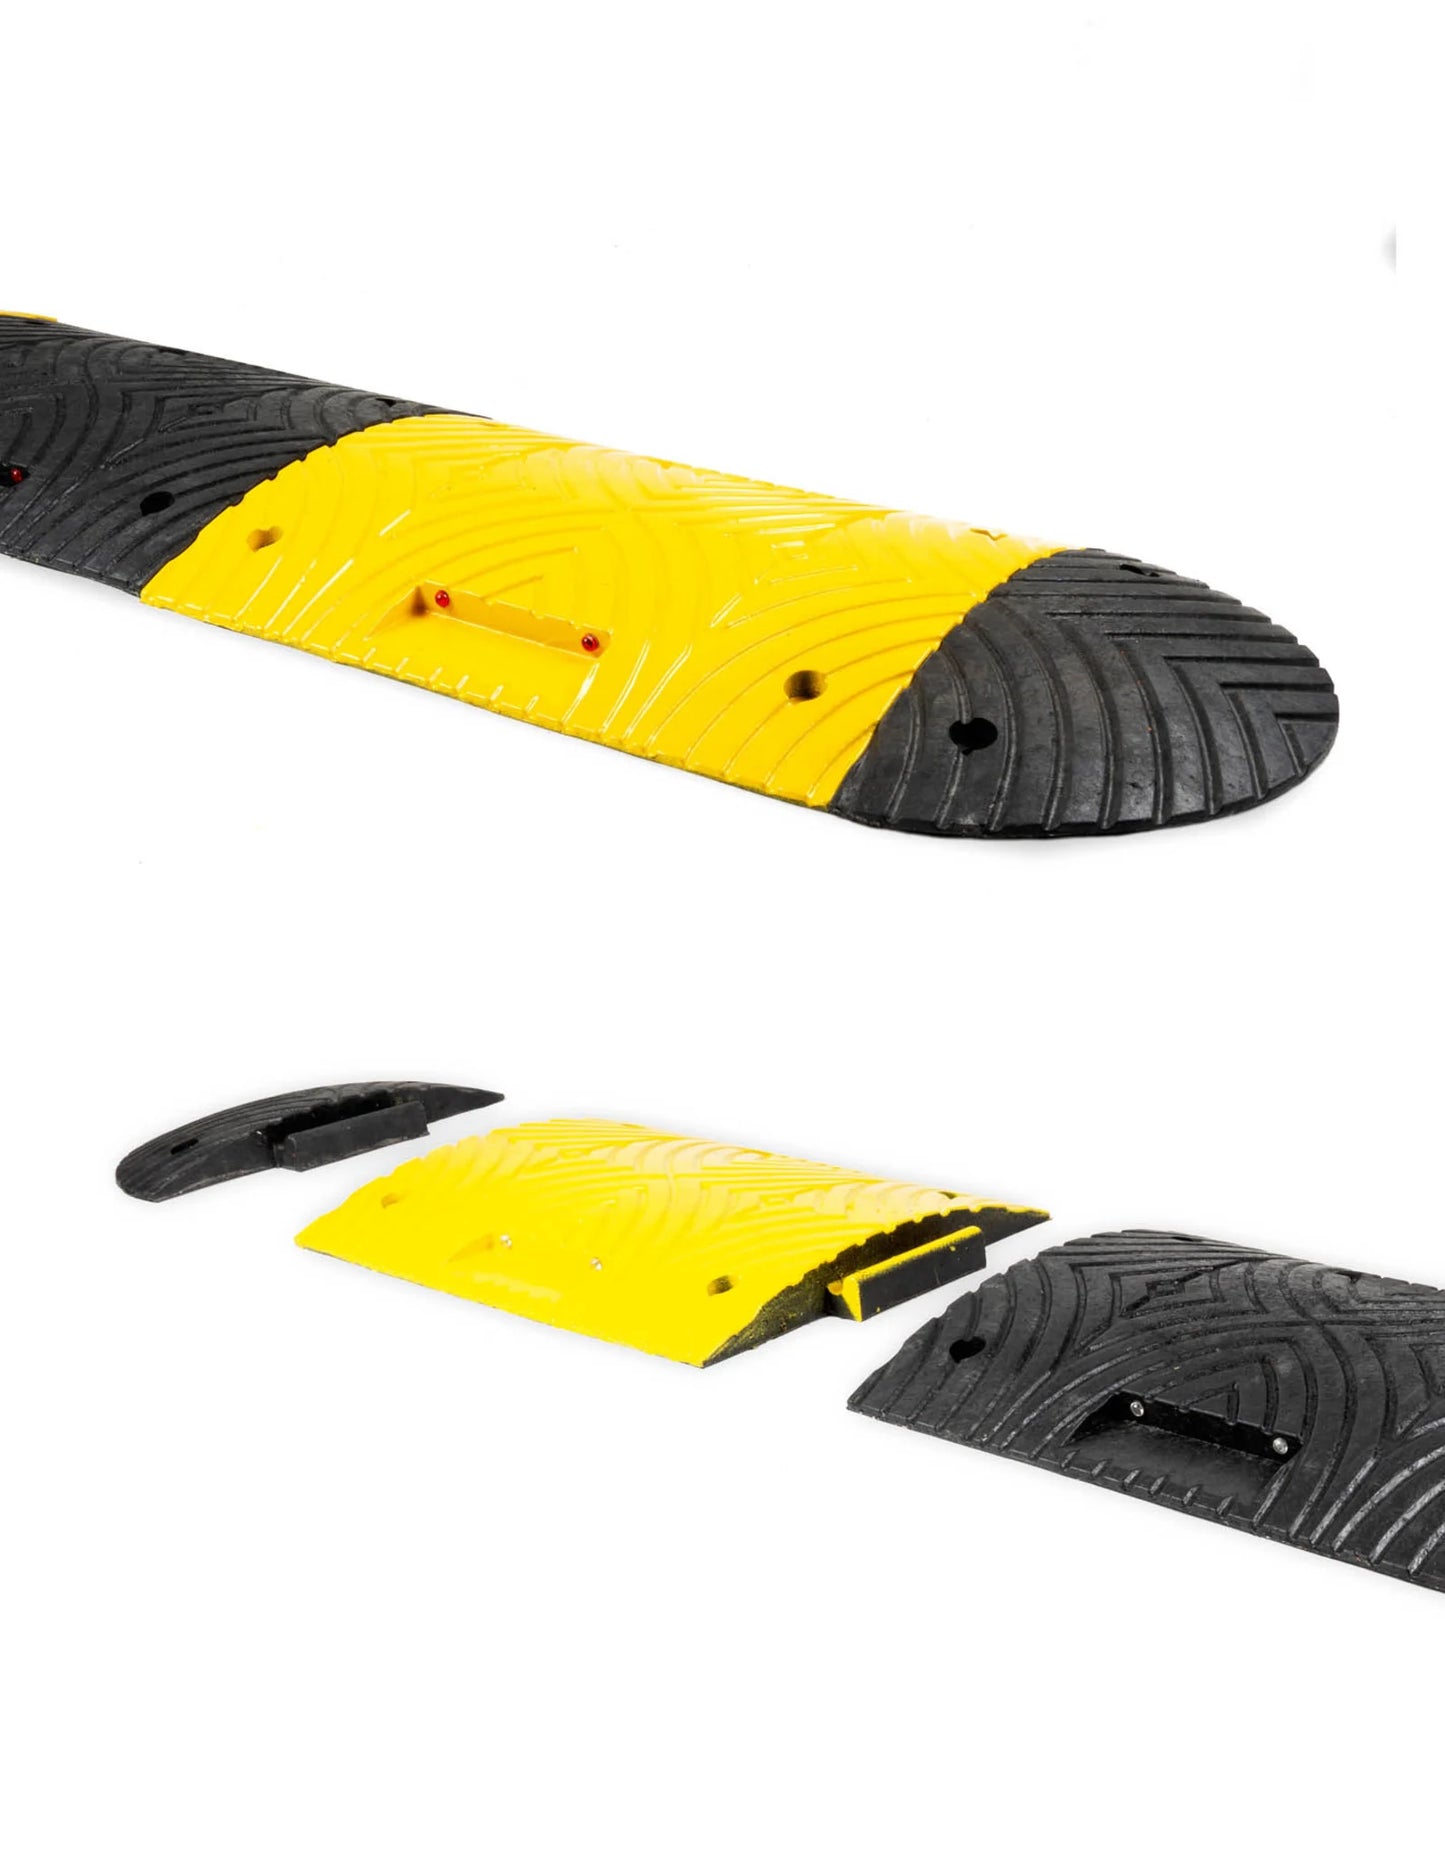 Ralentisseur voie parking - Kit complet jaune et noir - Hauteur 50 mm - Longueur de 2.50 M à 6 M